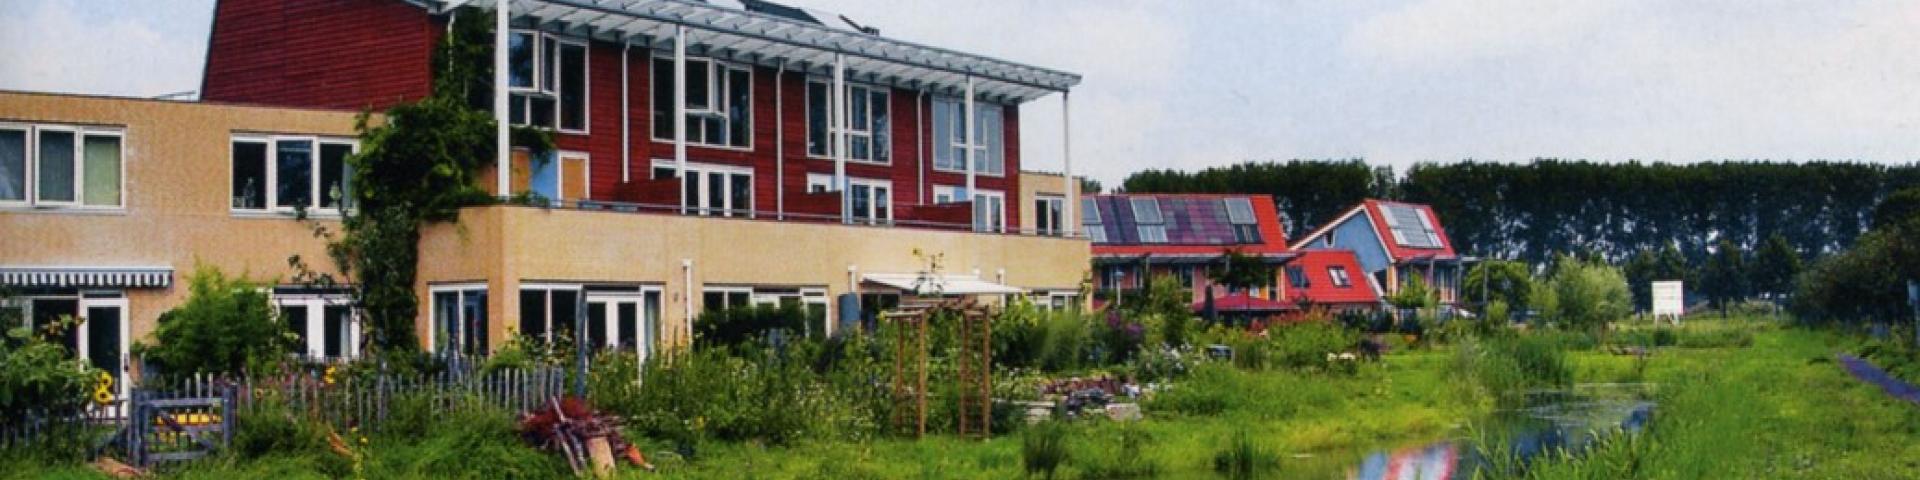 Duurzaam ecologisch wonen in Culemborg, rode huizen aan het water met veel groen afgebeeld.